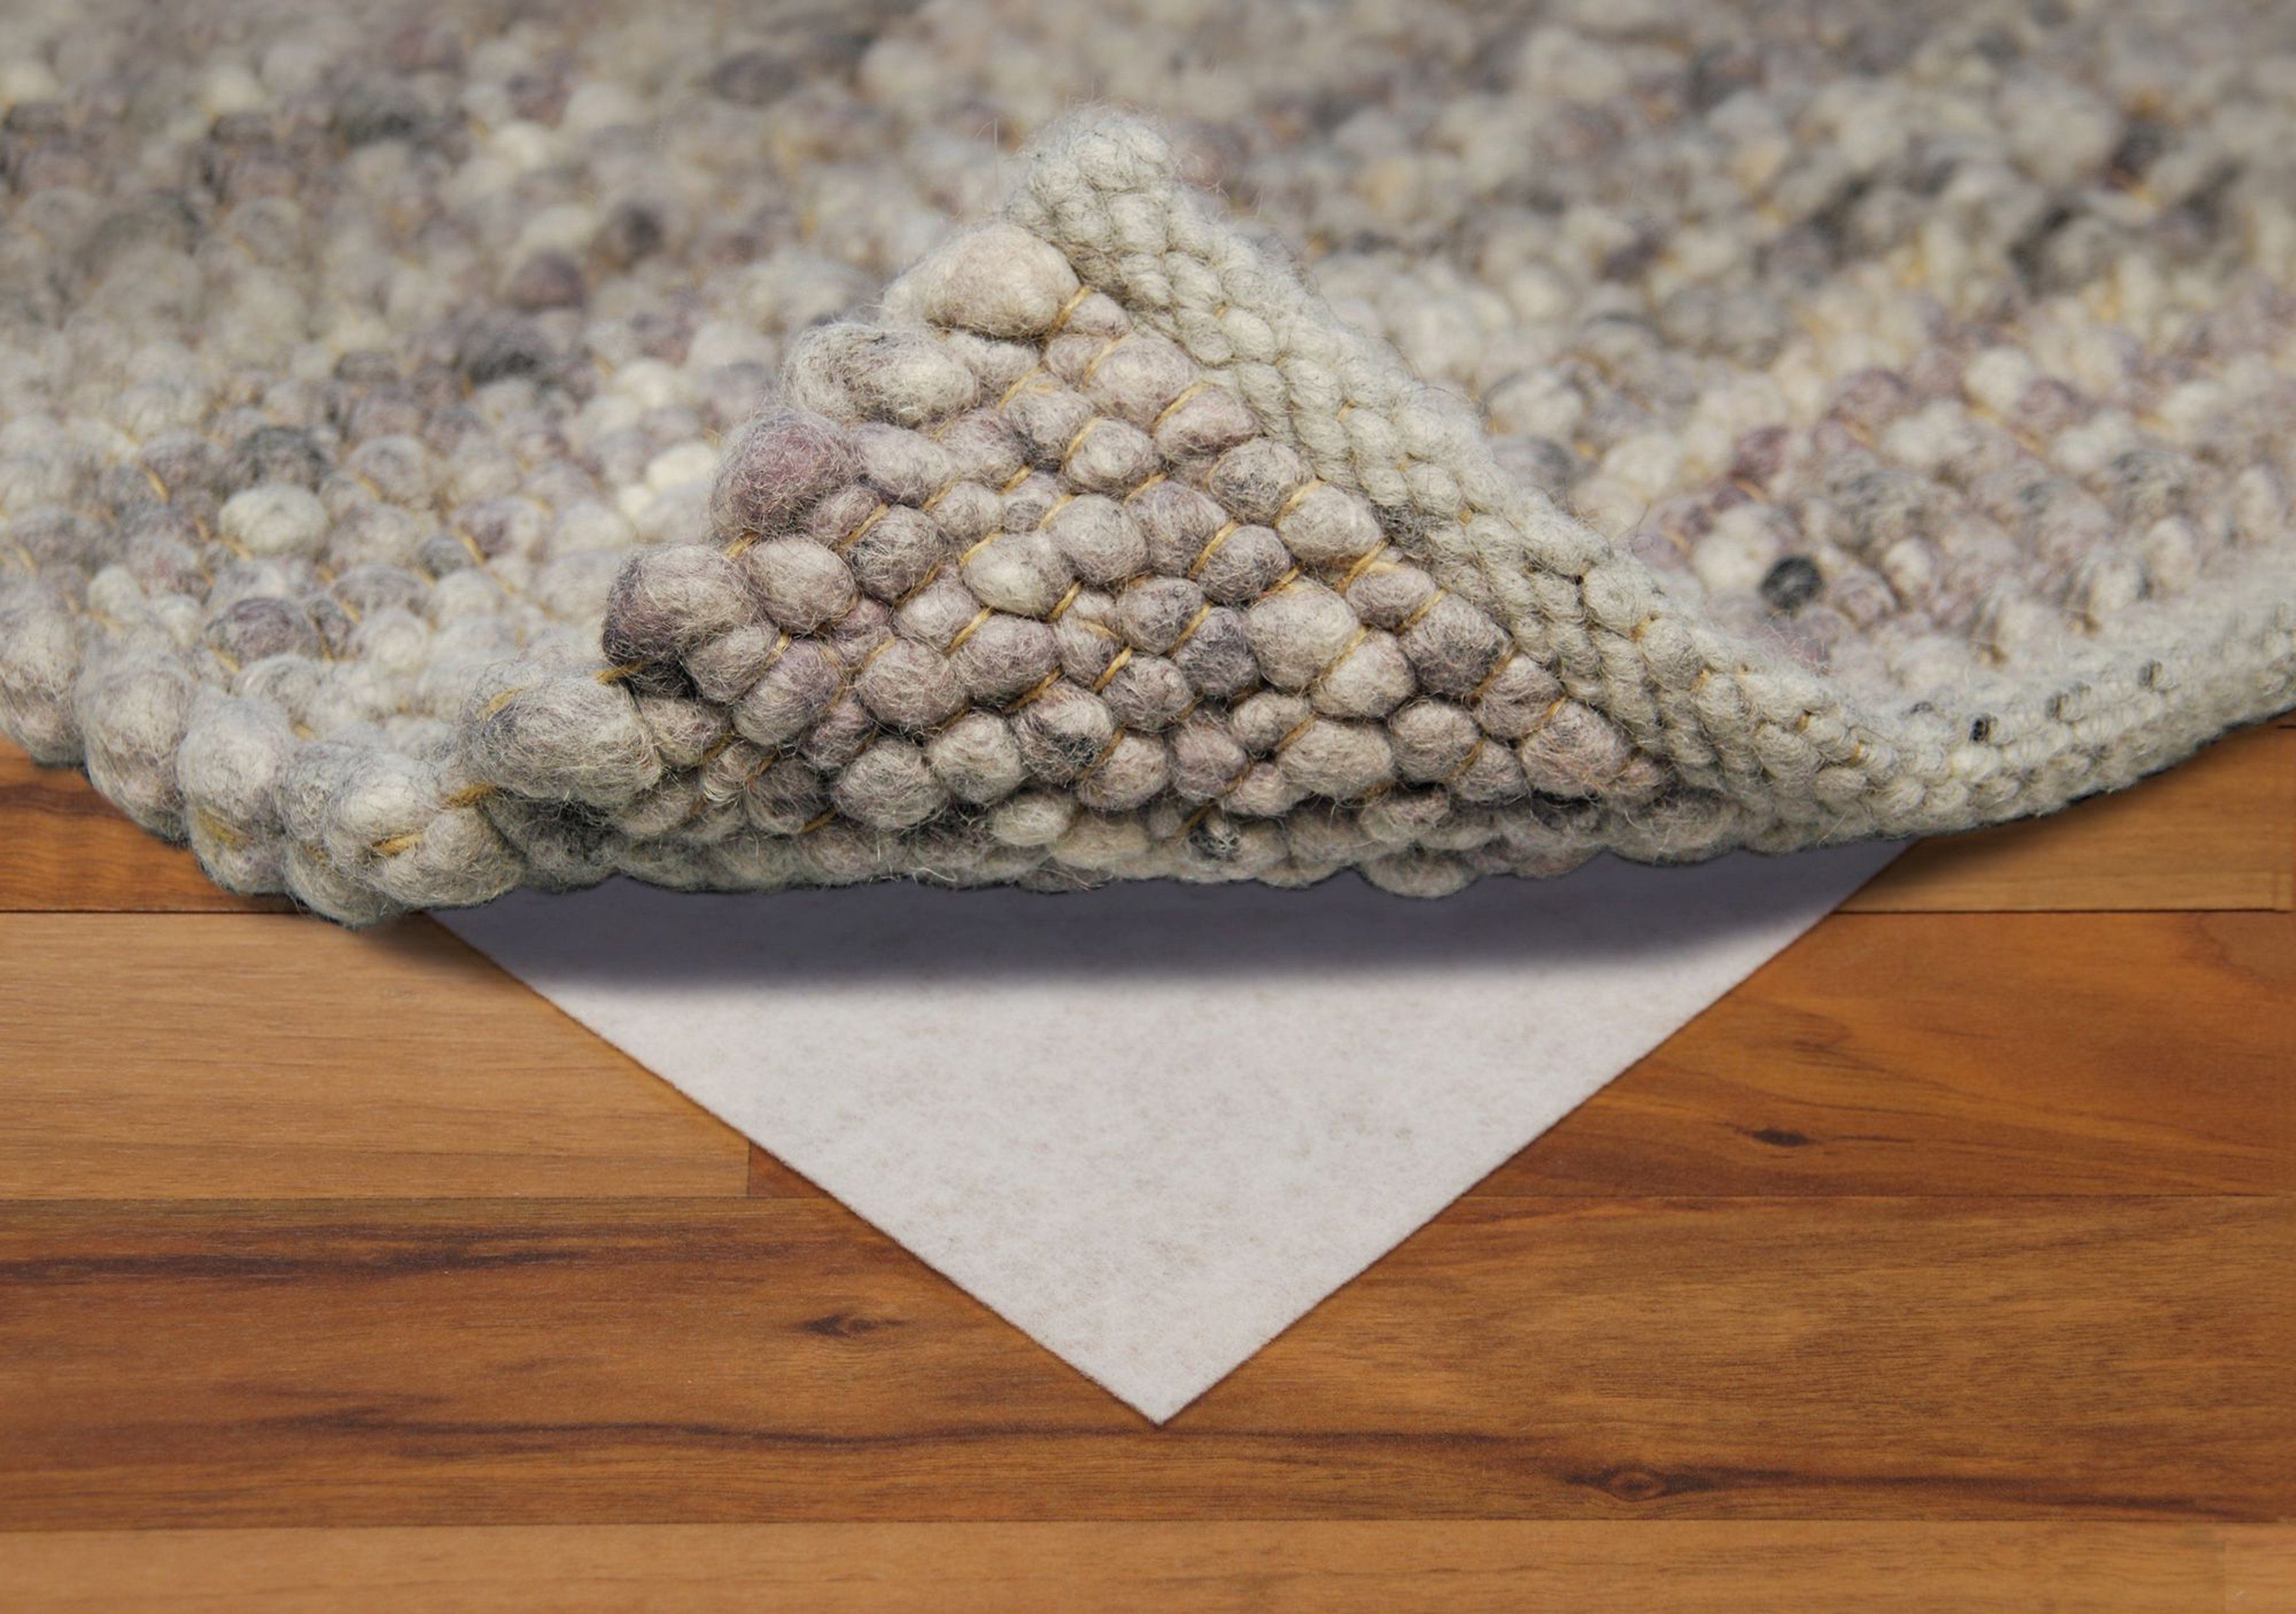  Königwerk Teppich Antirutschunterlage (80 x 150 cm) - Ohne  Weichmacher - Extra sichere Antirutschmatte für Teppich und alle Böden -  Perfekte Anti Rutsch Teppichunterlage